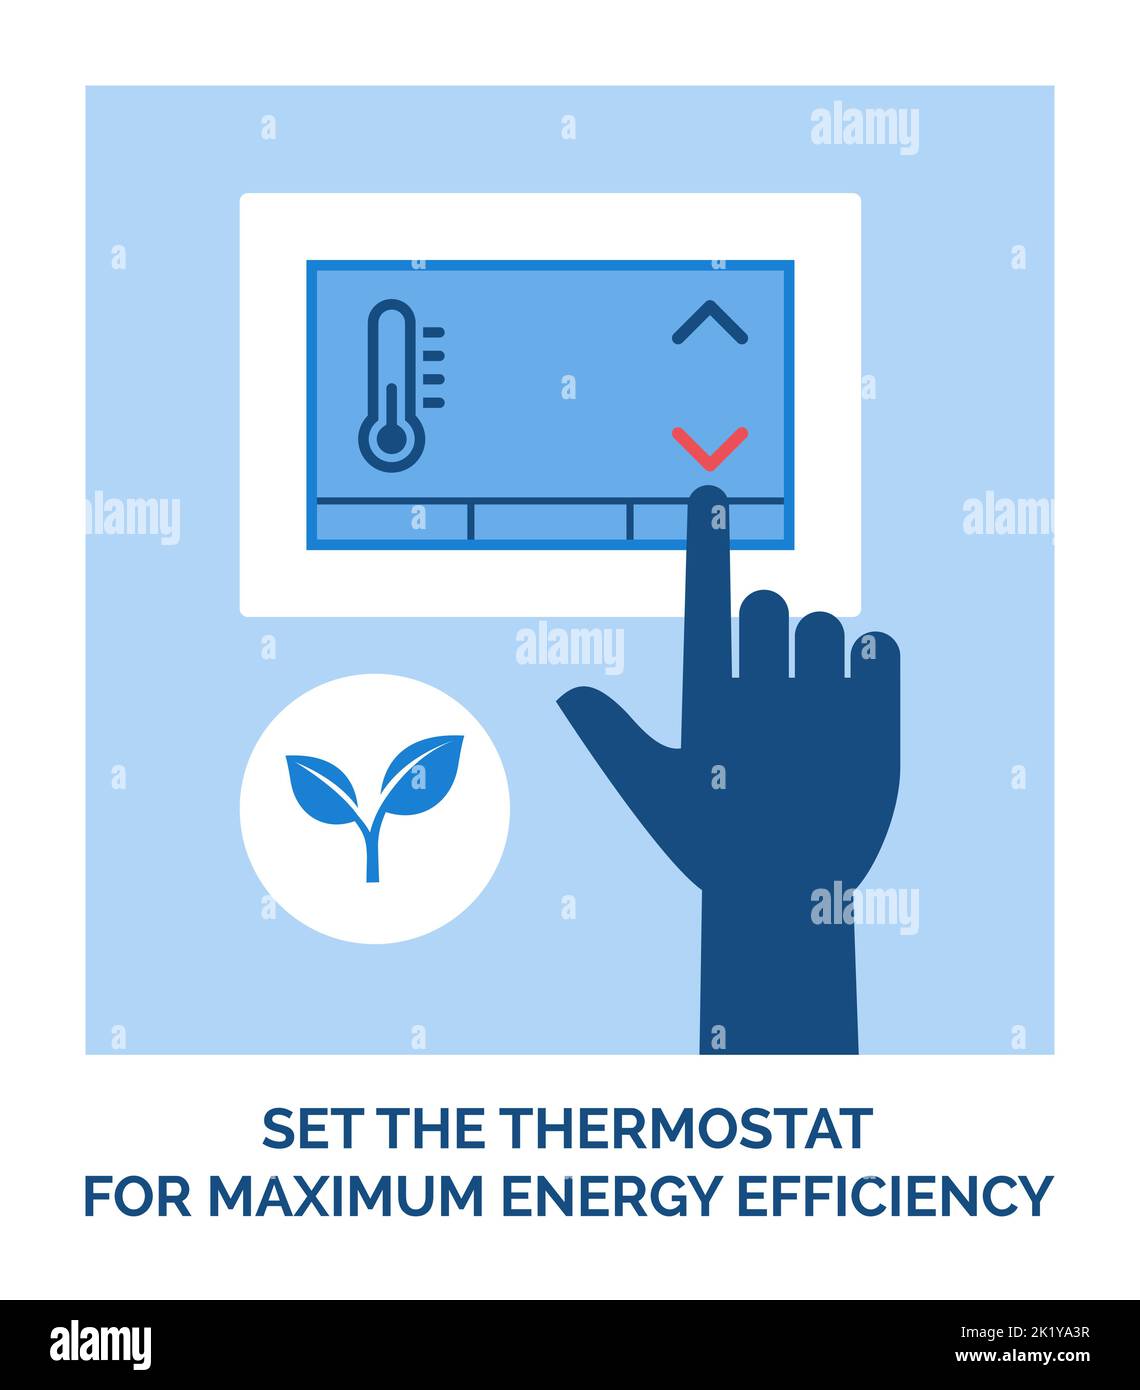 Mode de vie écologique : réglez le thermostat pour une efficacité énergétique maximale Illustration de Vecteur